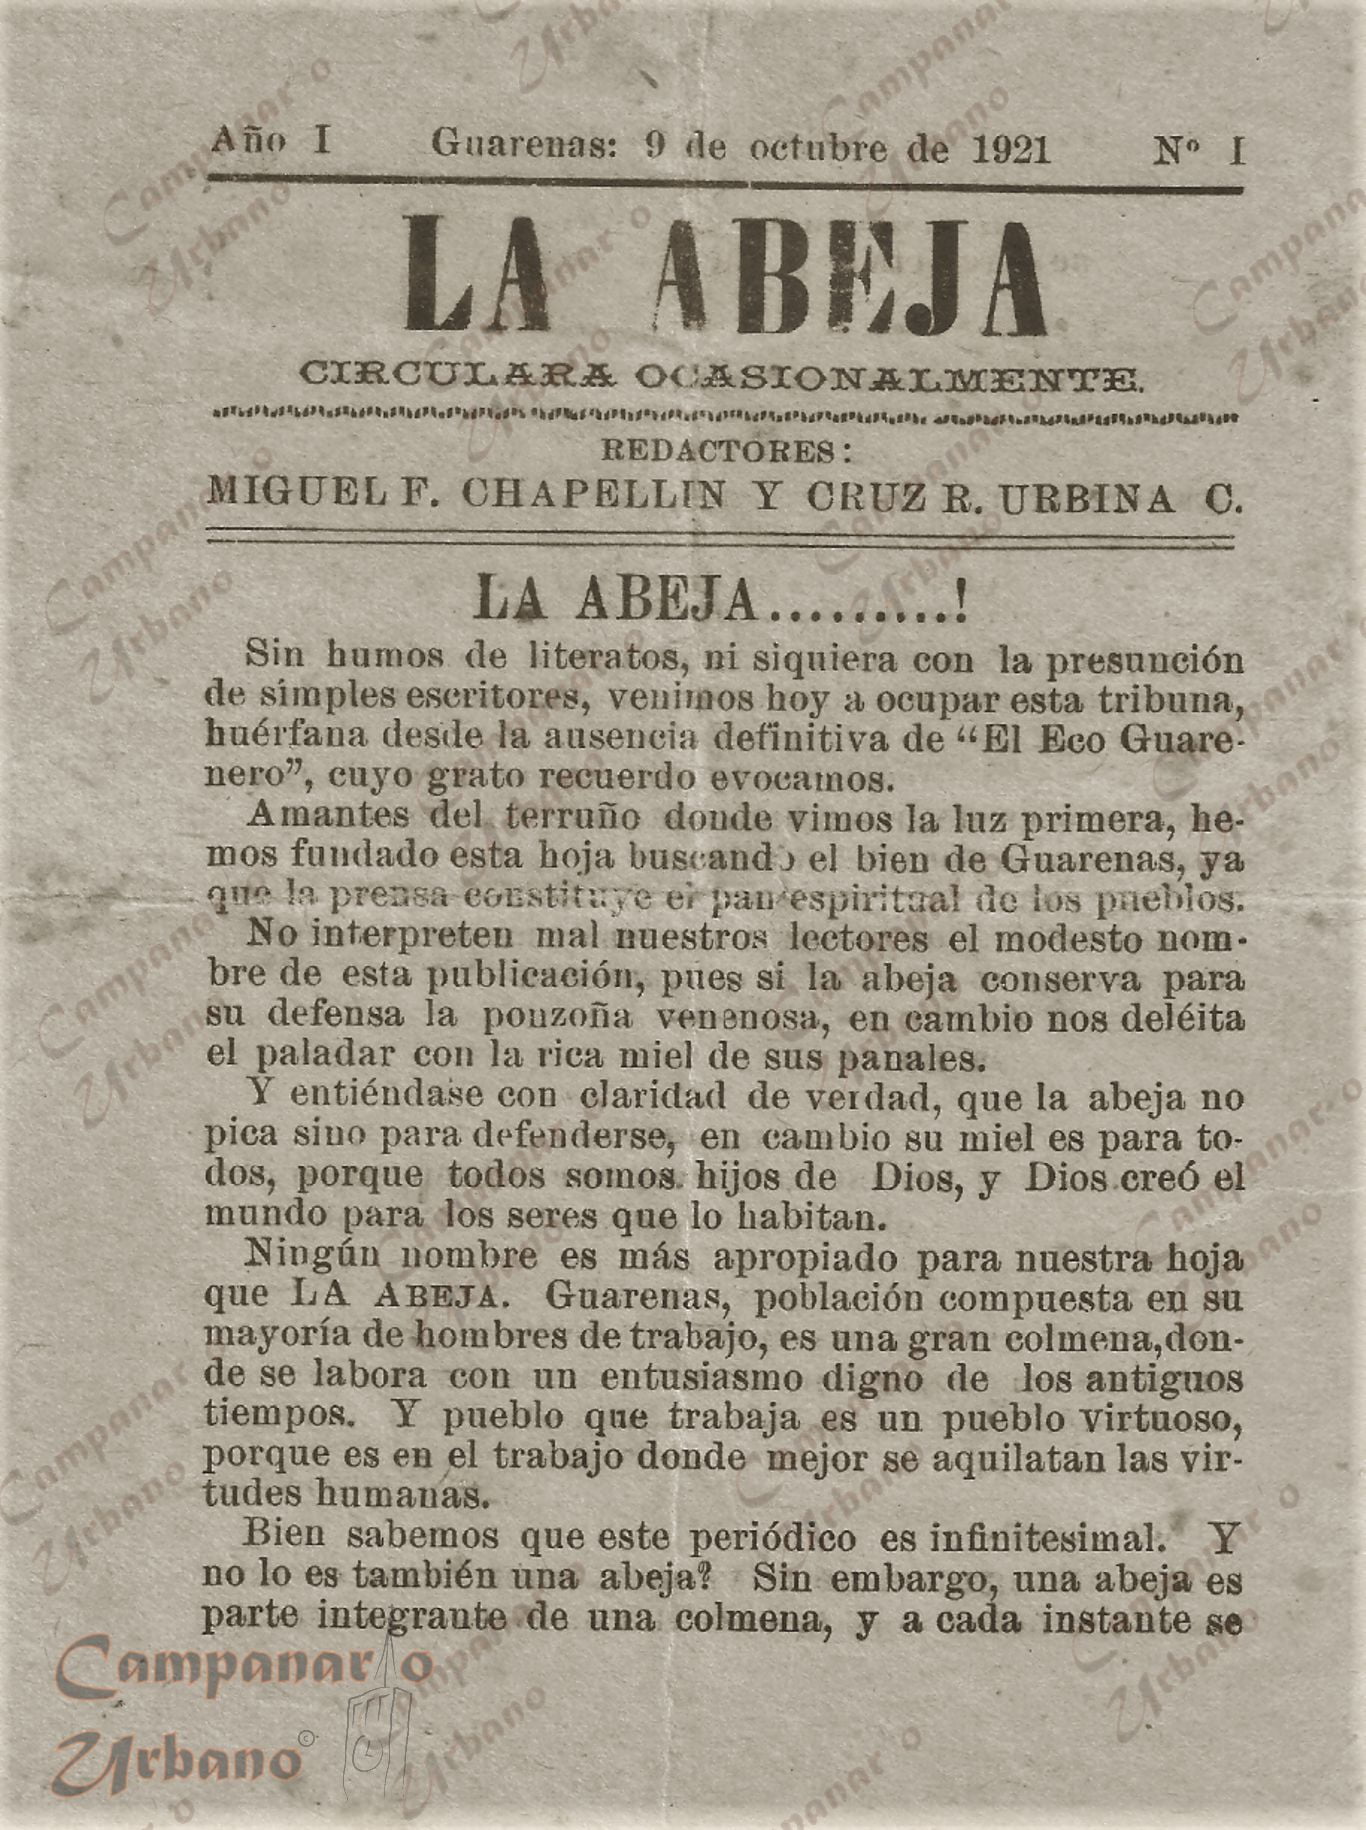 Noticioso "La Abeja", primera edición. Redactores: Cruz Ramón Urbina Camacho y Miguel F. Chapellín. Guarenas, 9 de octubre de 1921.